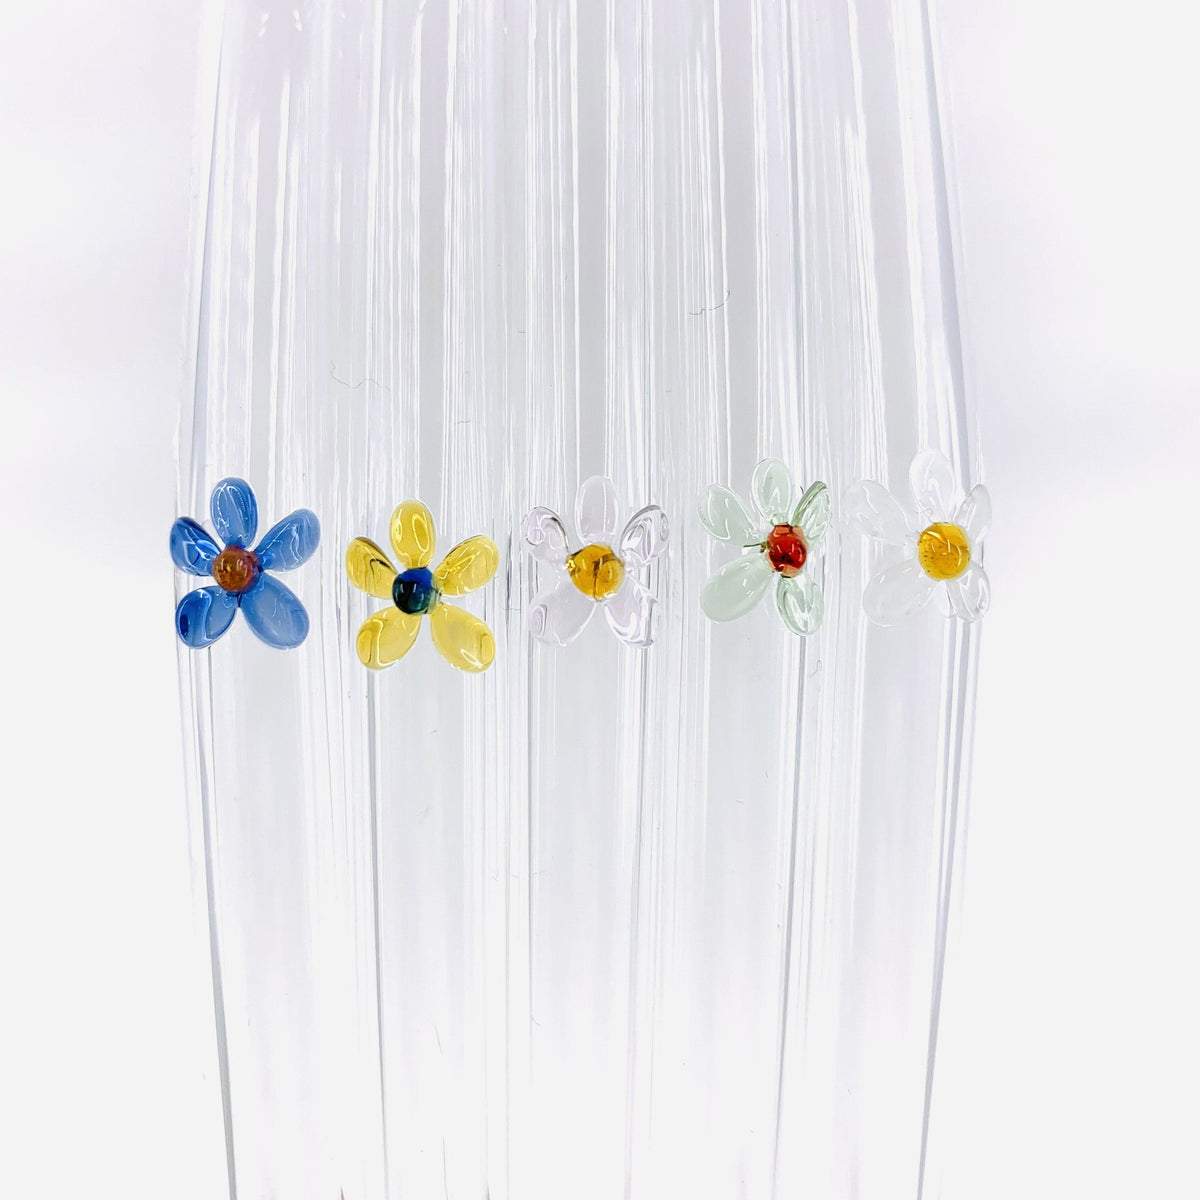 Glass Straw With Flower Flower Glass Straw Drinking Glass Straw